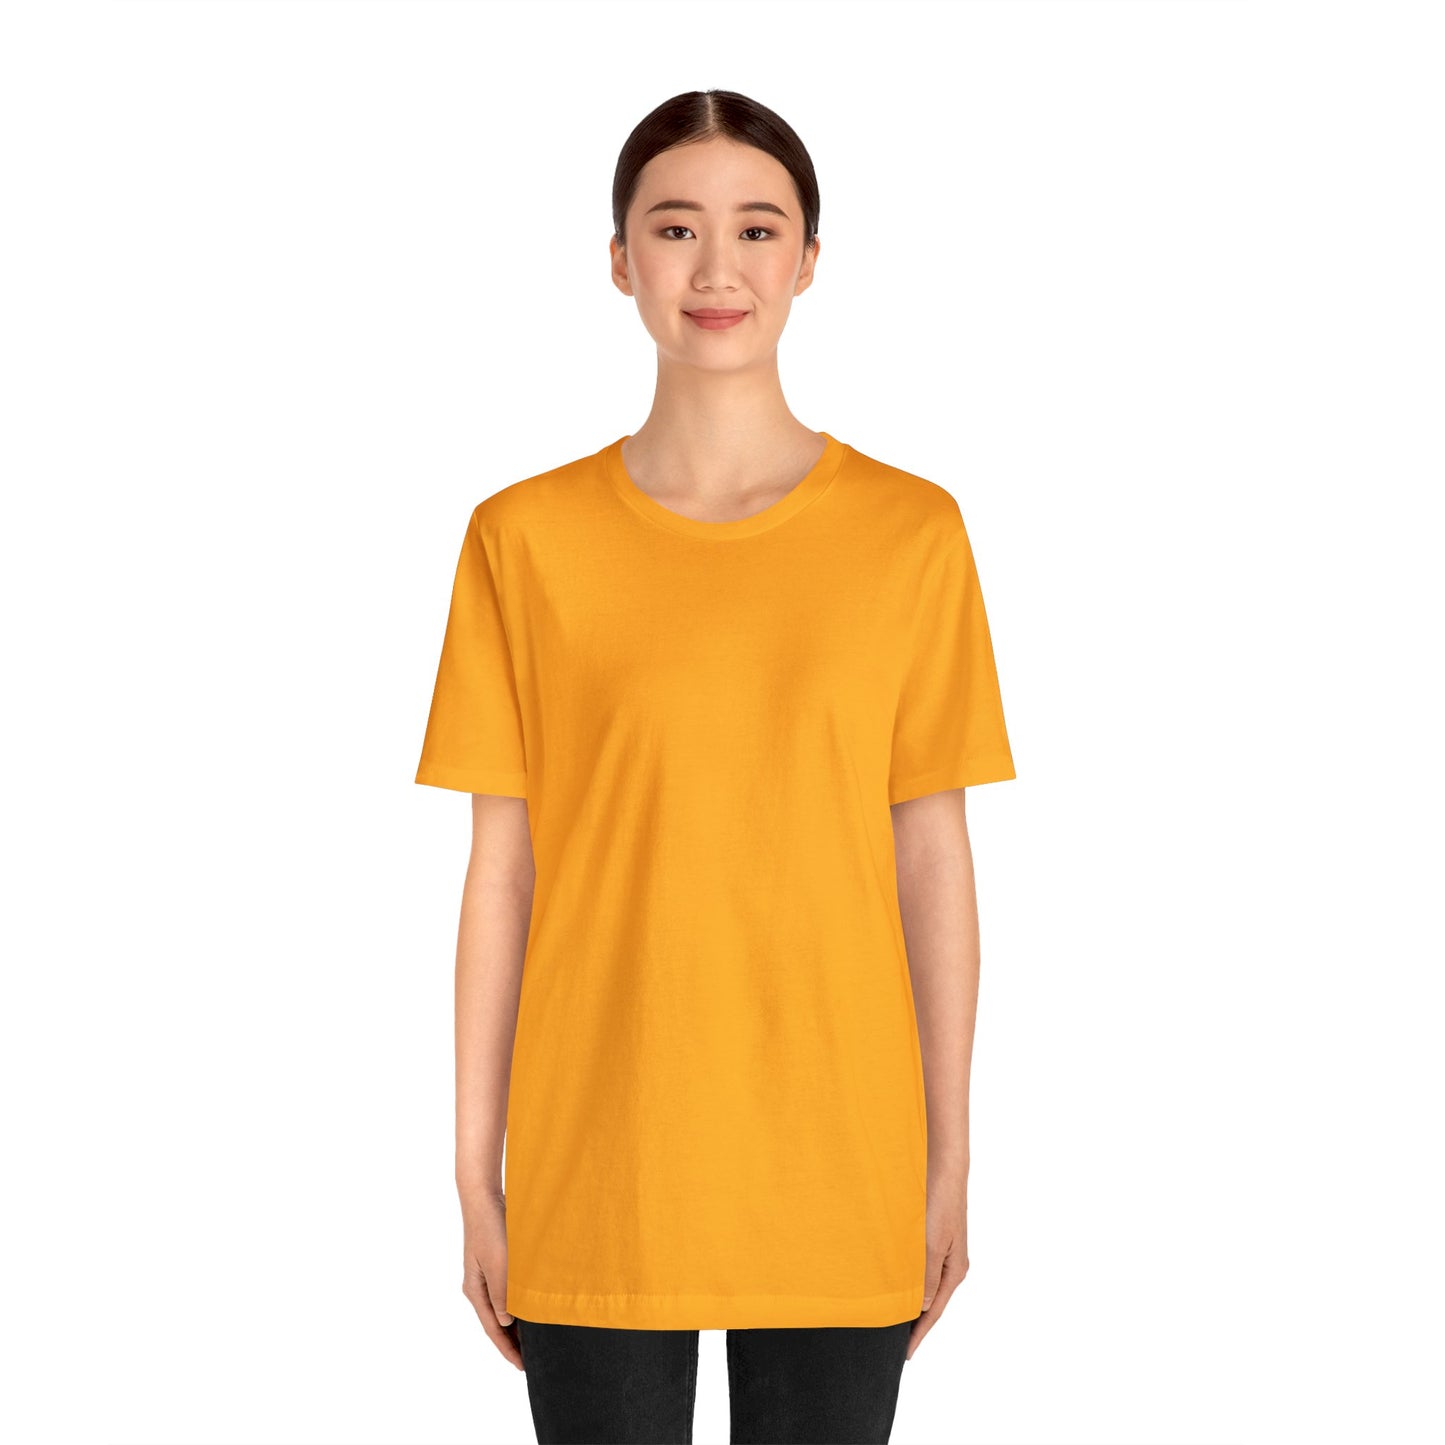 Unisex Jersey Short Sleeve Gold T Shirt